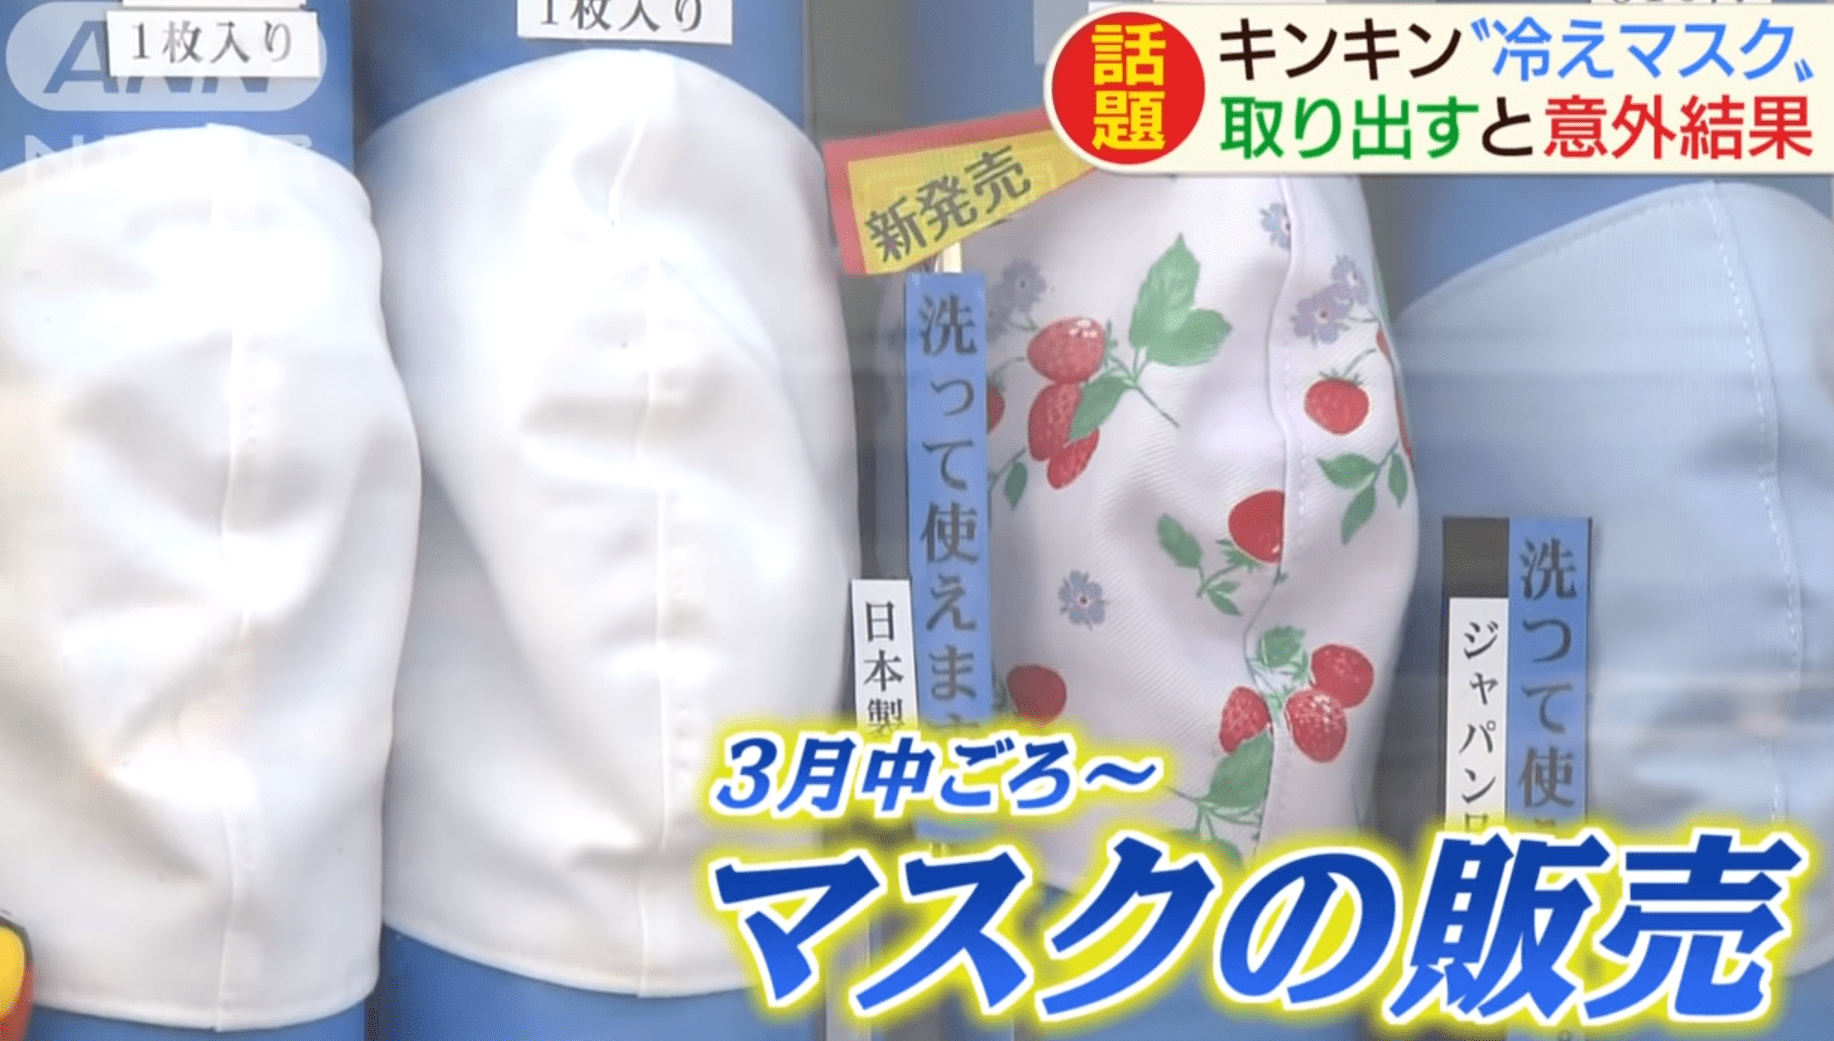 Máscaras são vendidas “geladas” em máquinas automáticas no Japão